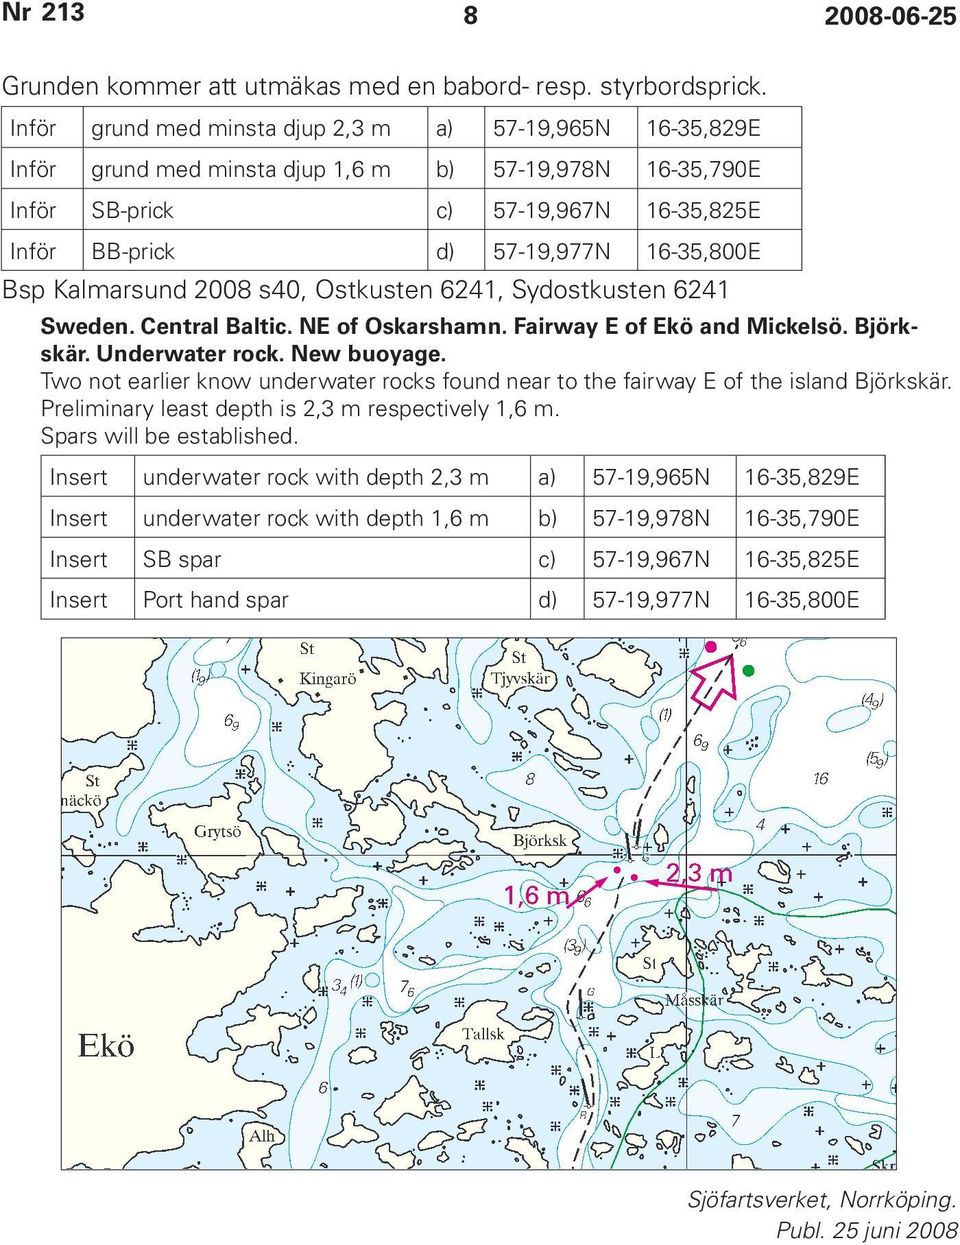 Bsp Kalmarsund 2008 s40, Ostkusten 6241, Sydostkusten 6241 Sweden. Central Baltic. NE of Oskarshamn. Fairway E of Ekö and Mickelsö. Björkskär. Underwater rock. New buoyage.